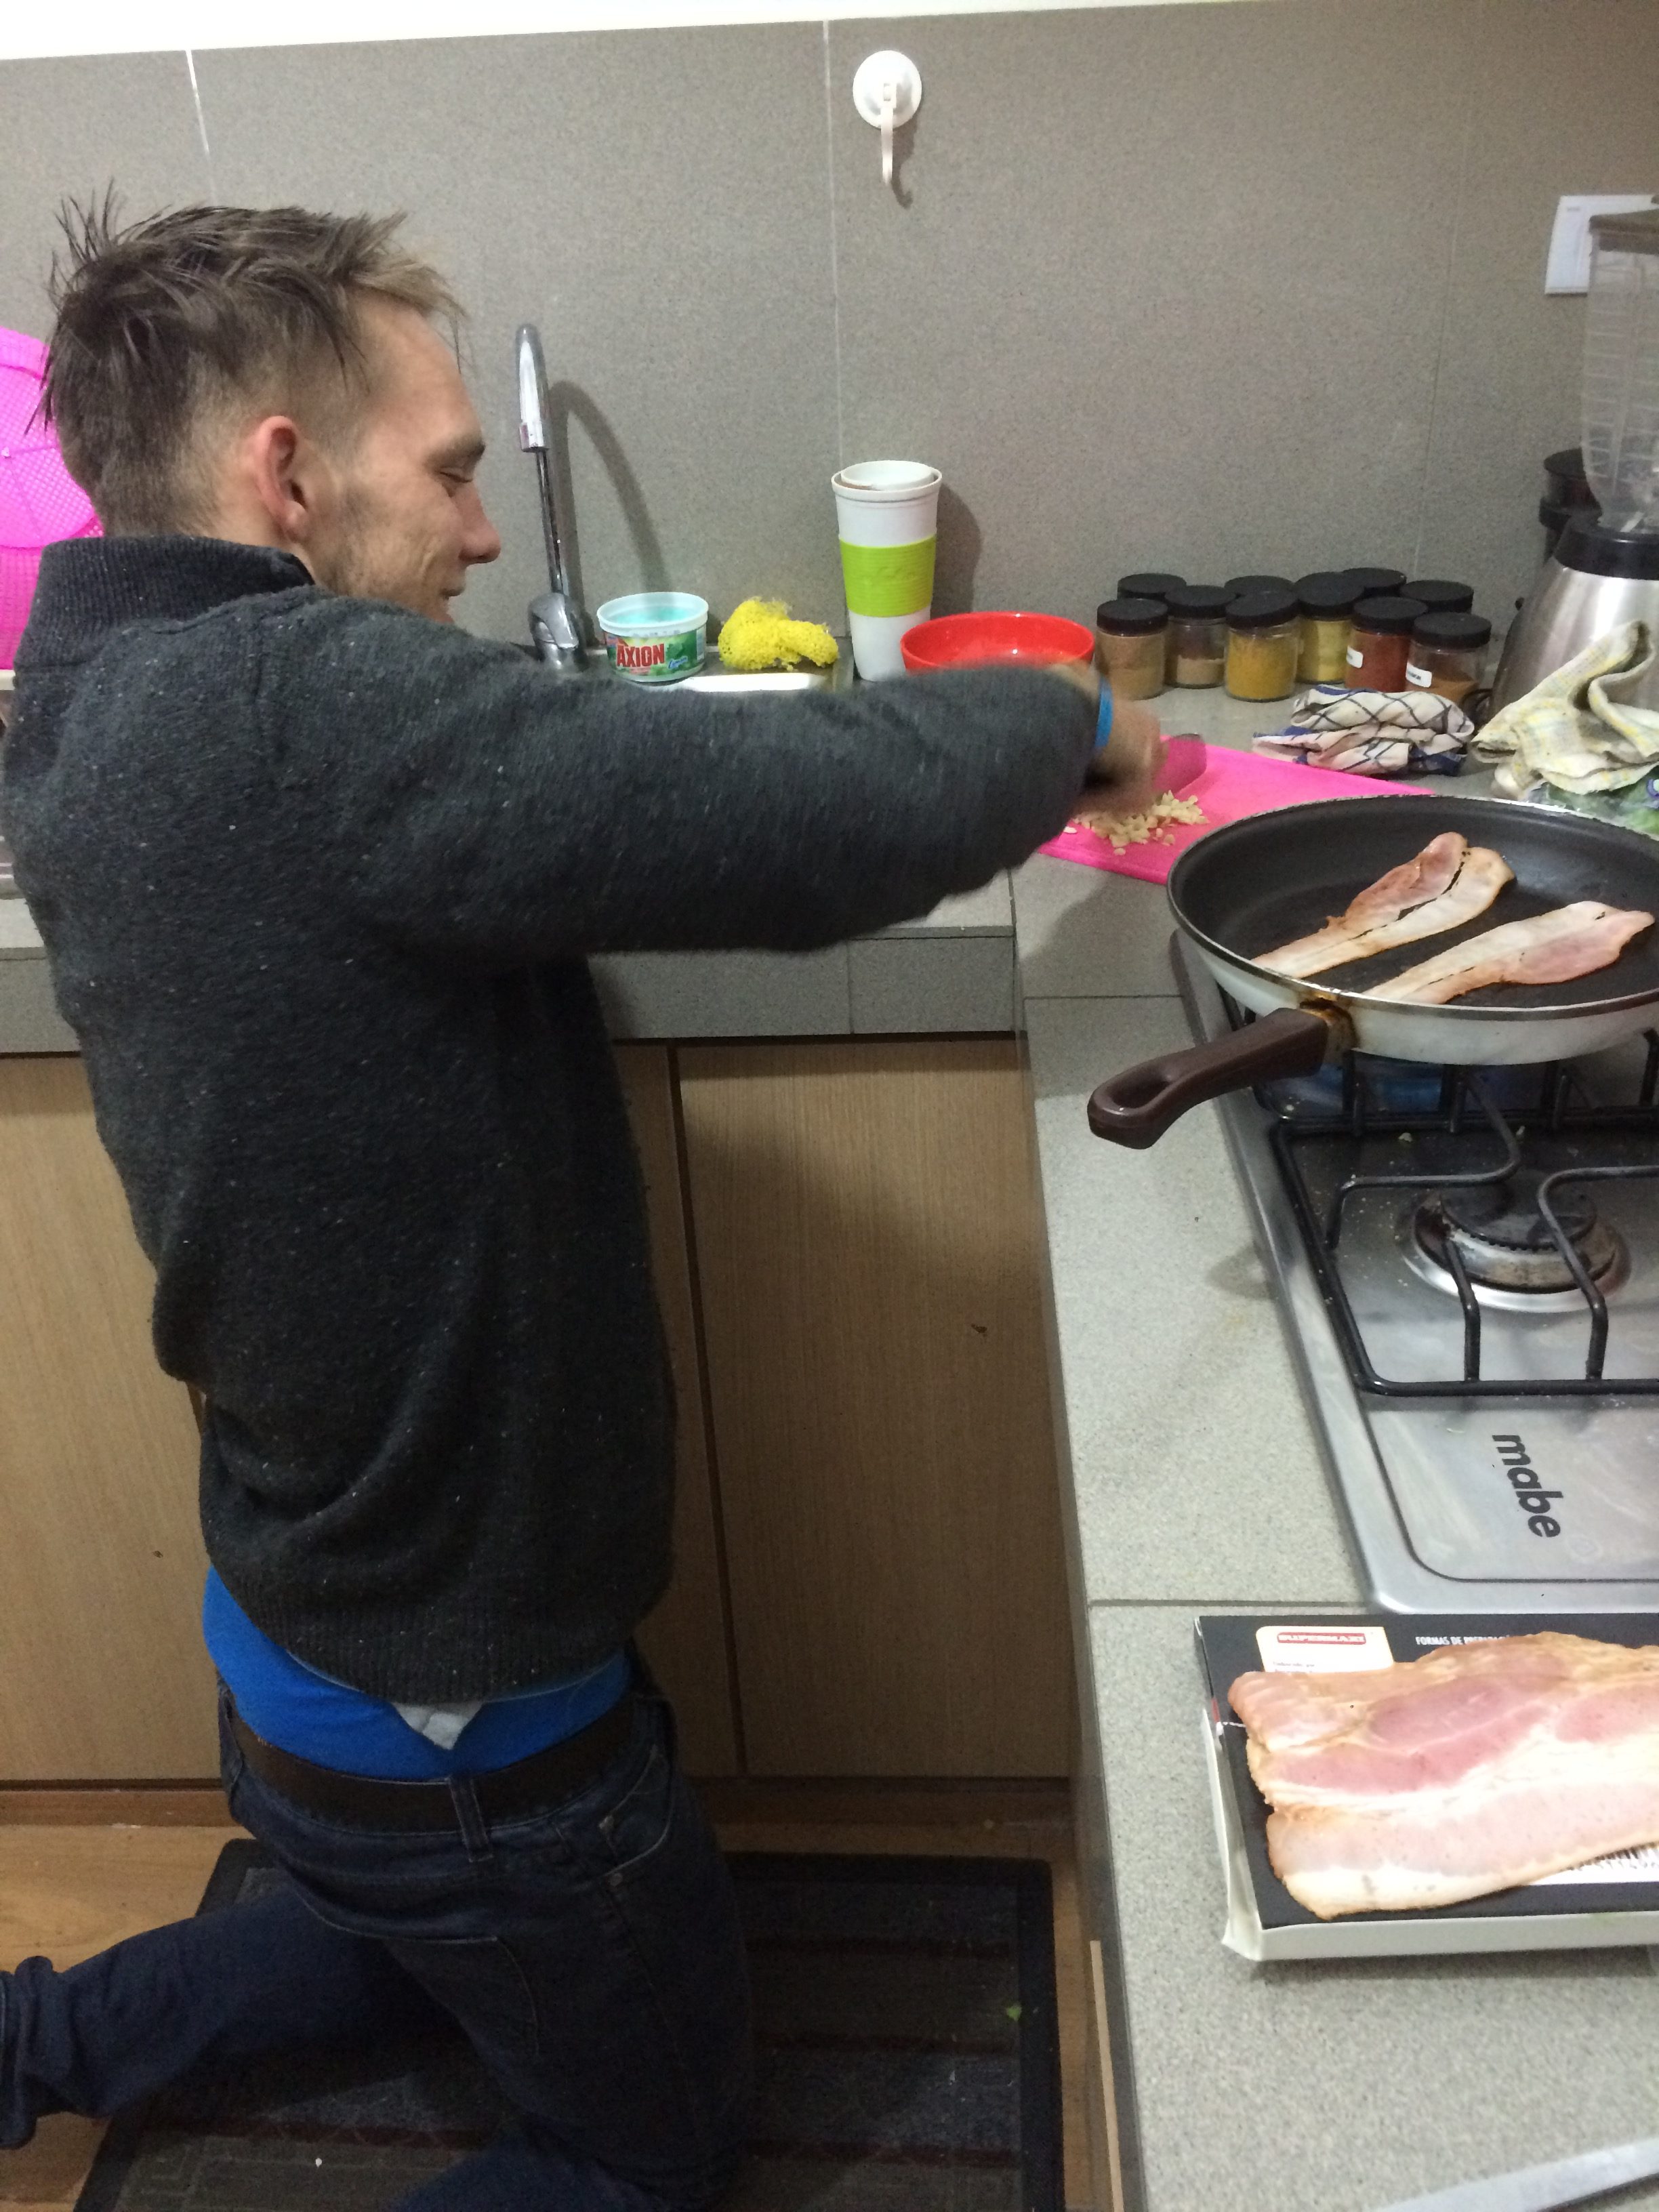 Man preparing food.